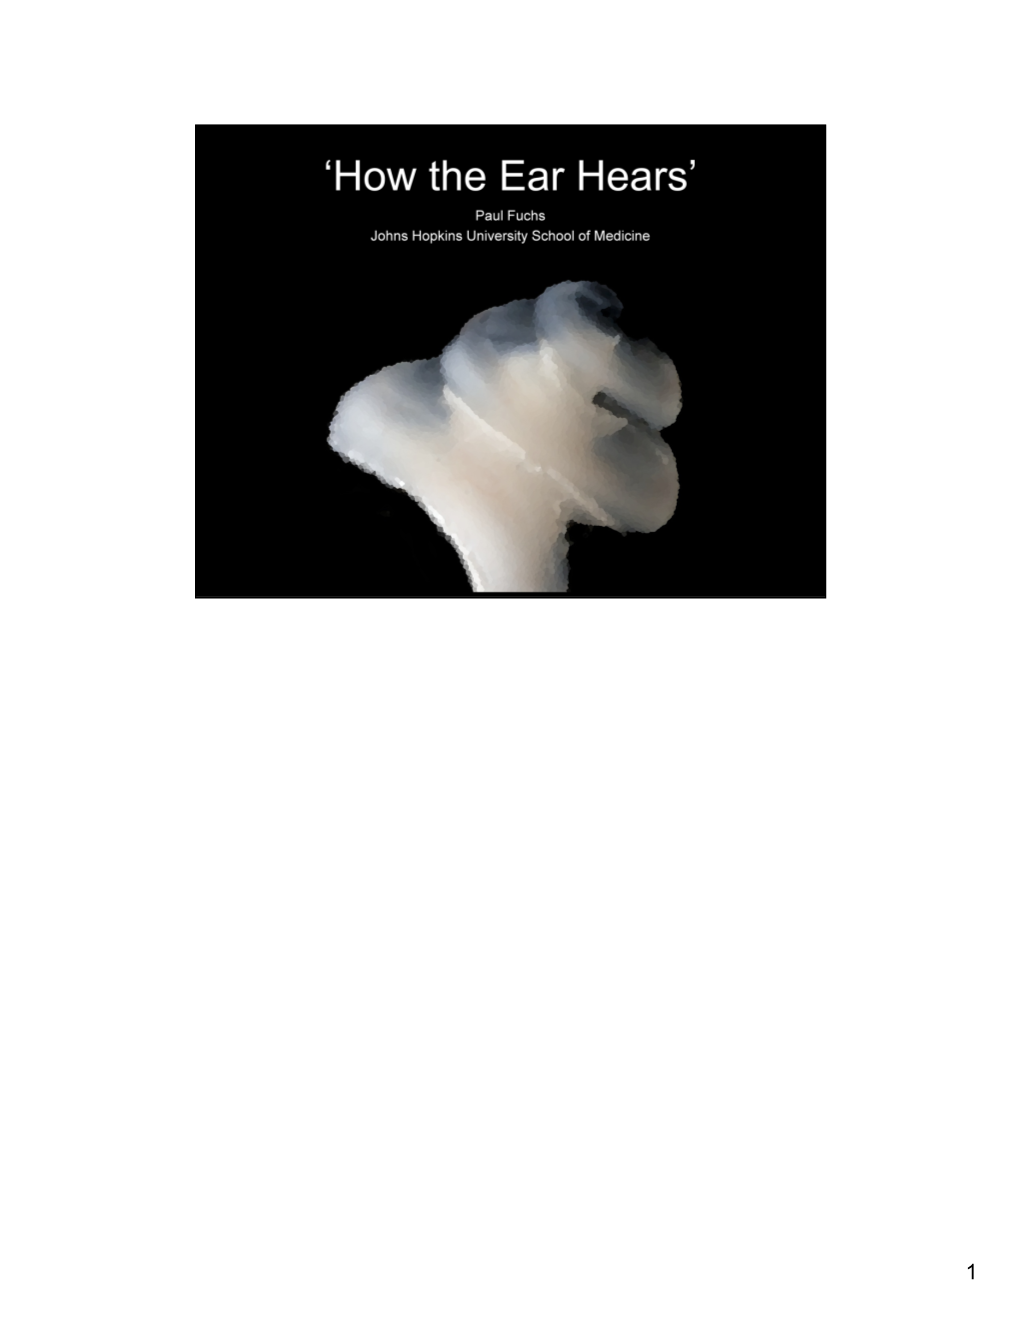 How the Ear Hears